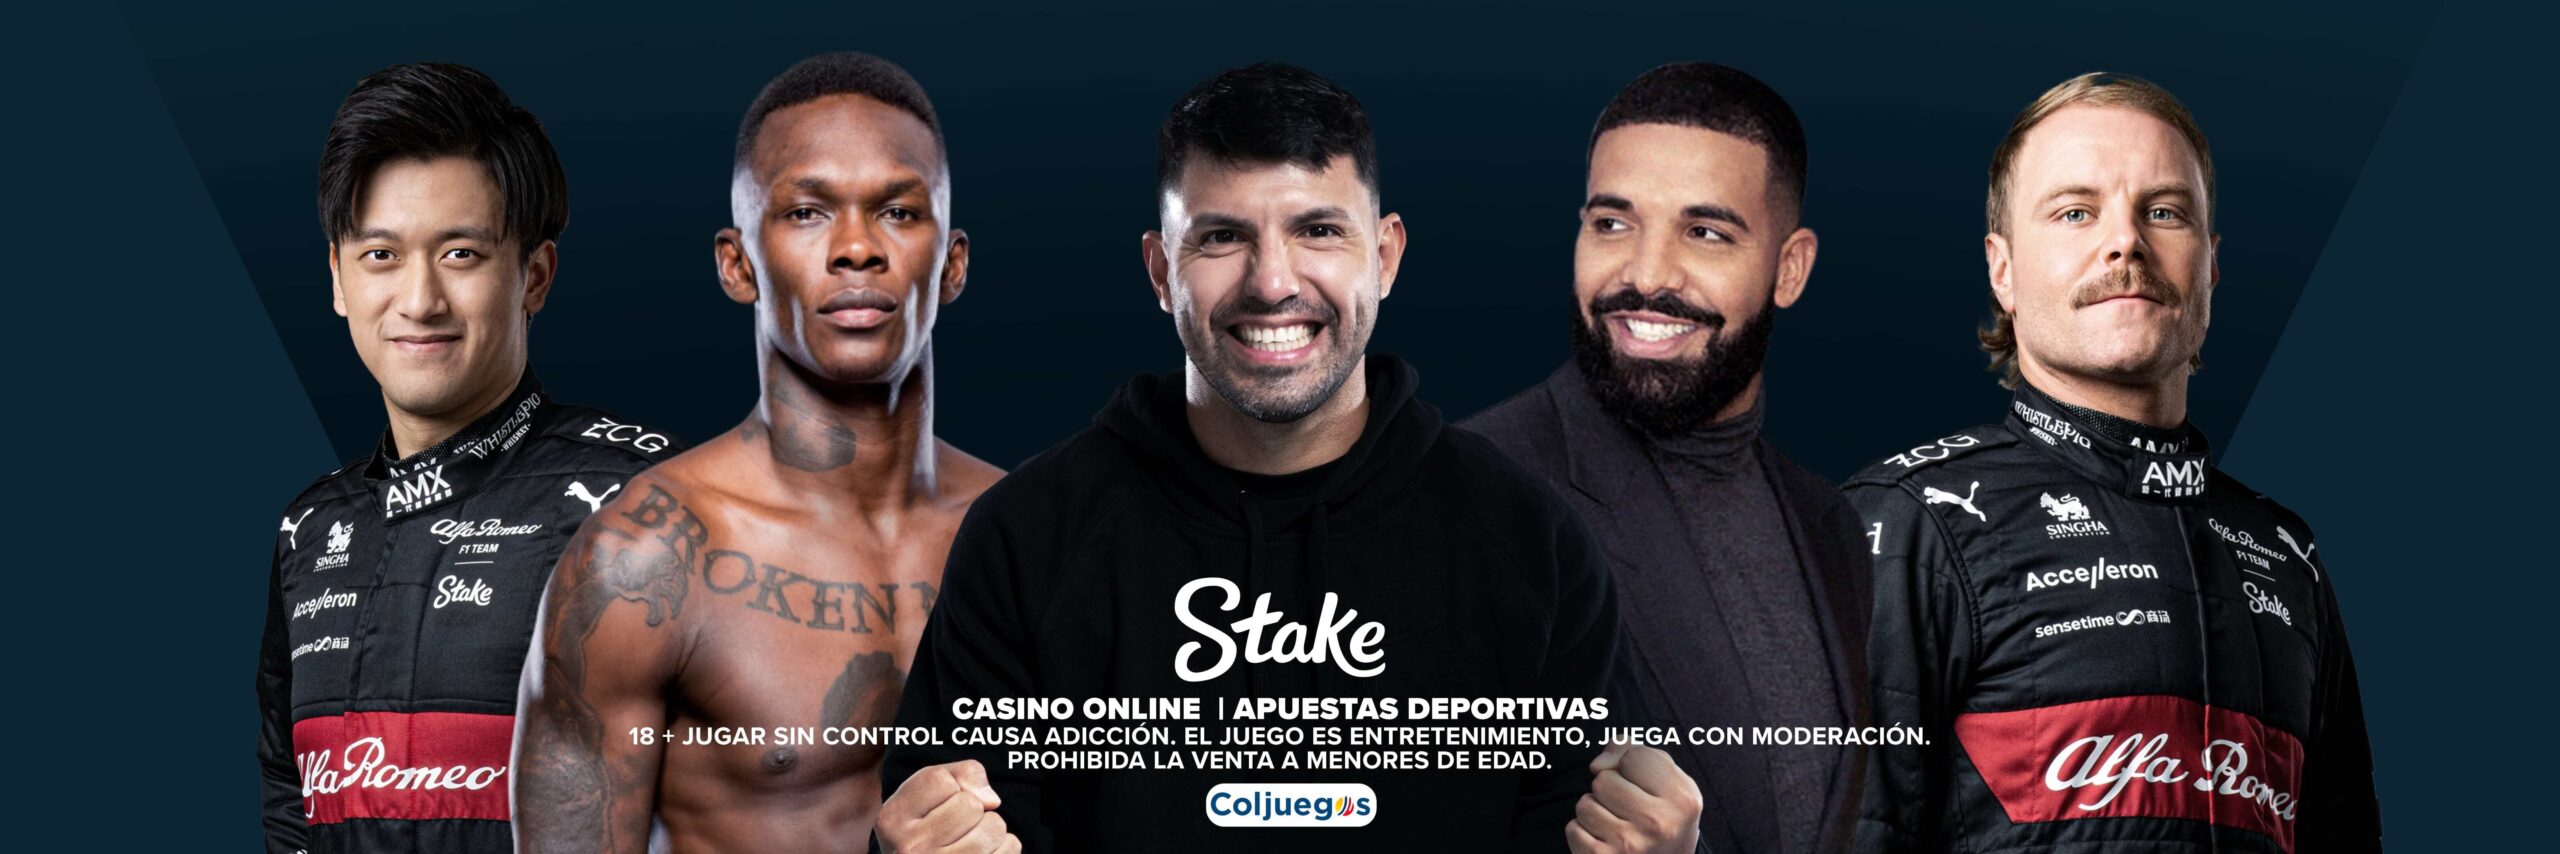 Stake anunció su llegada al mercado colombiano